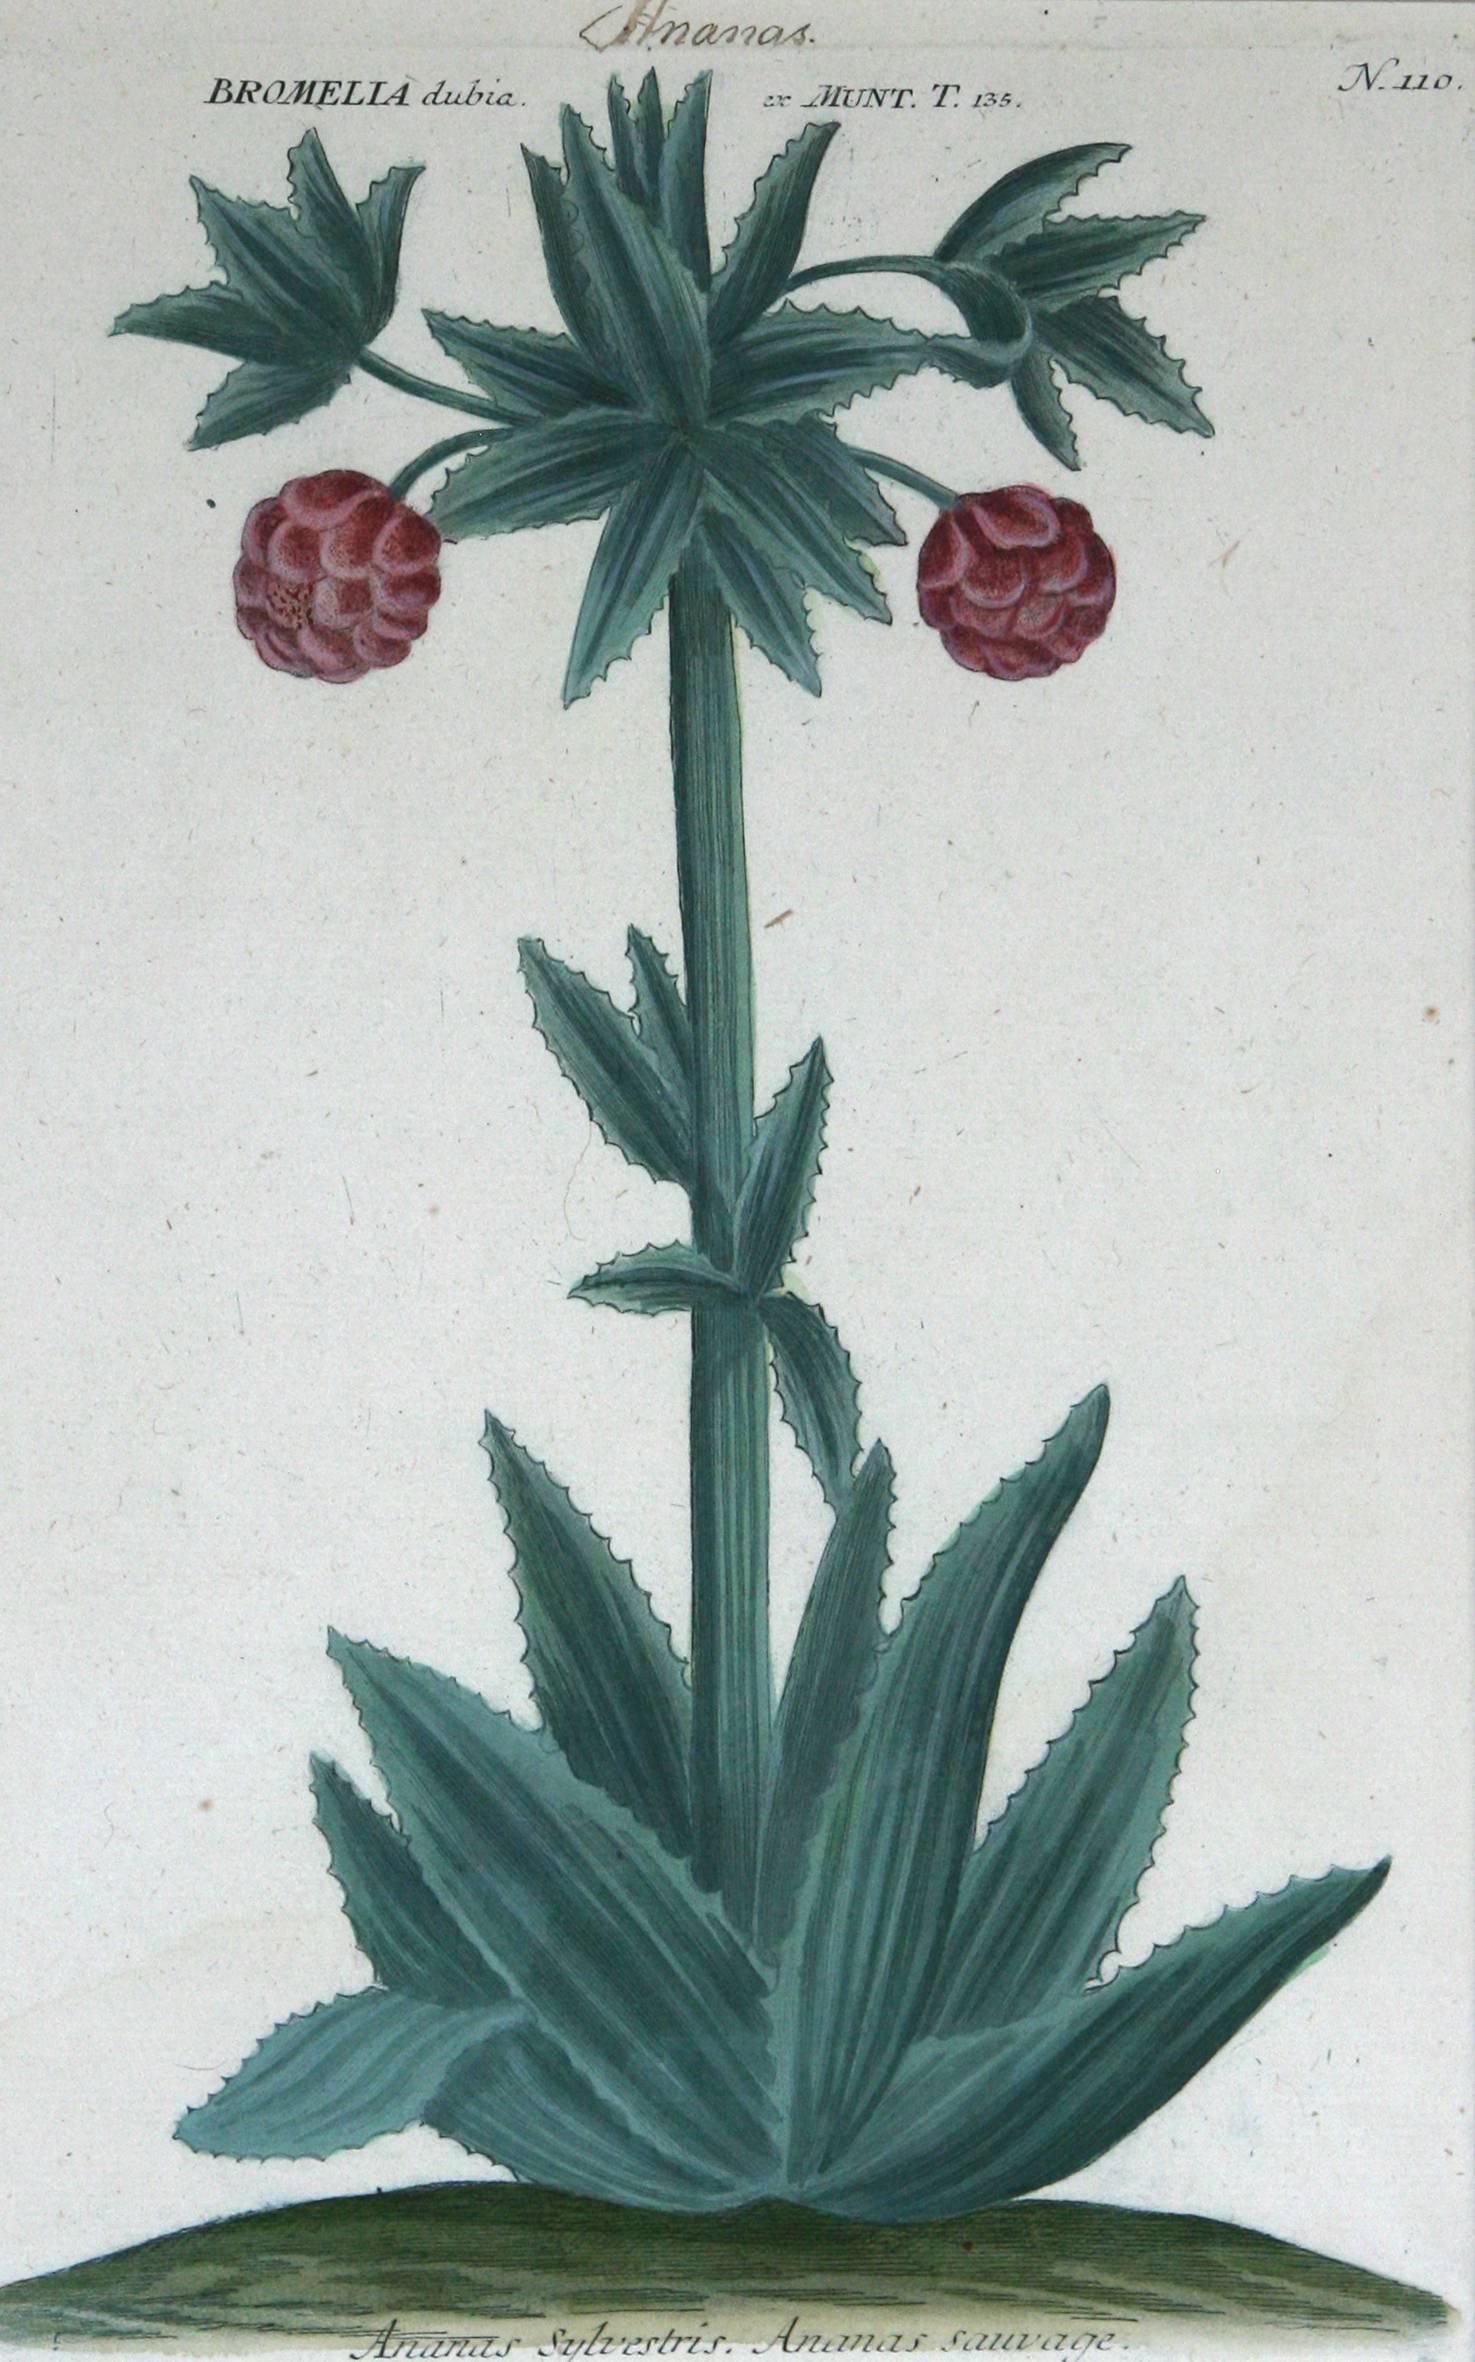 Still-Life Print Johann Wilhelm Weinmann - Ananus Sclvestris (ananas) N. 110 gravure à la manière noire avec coloration à la main